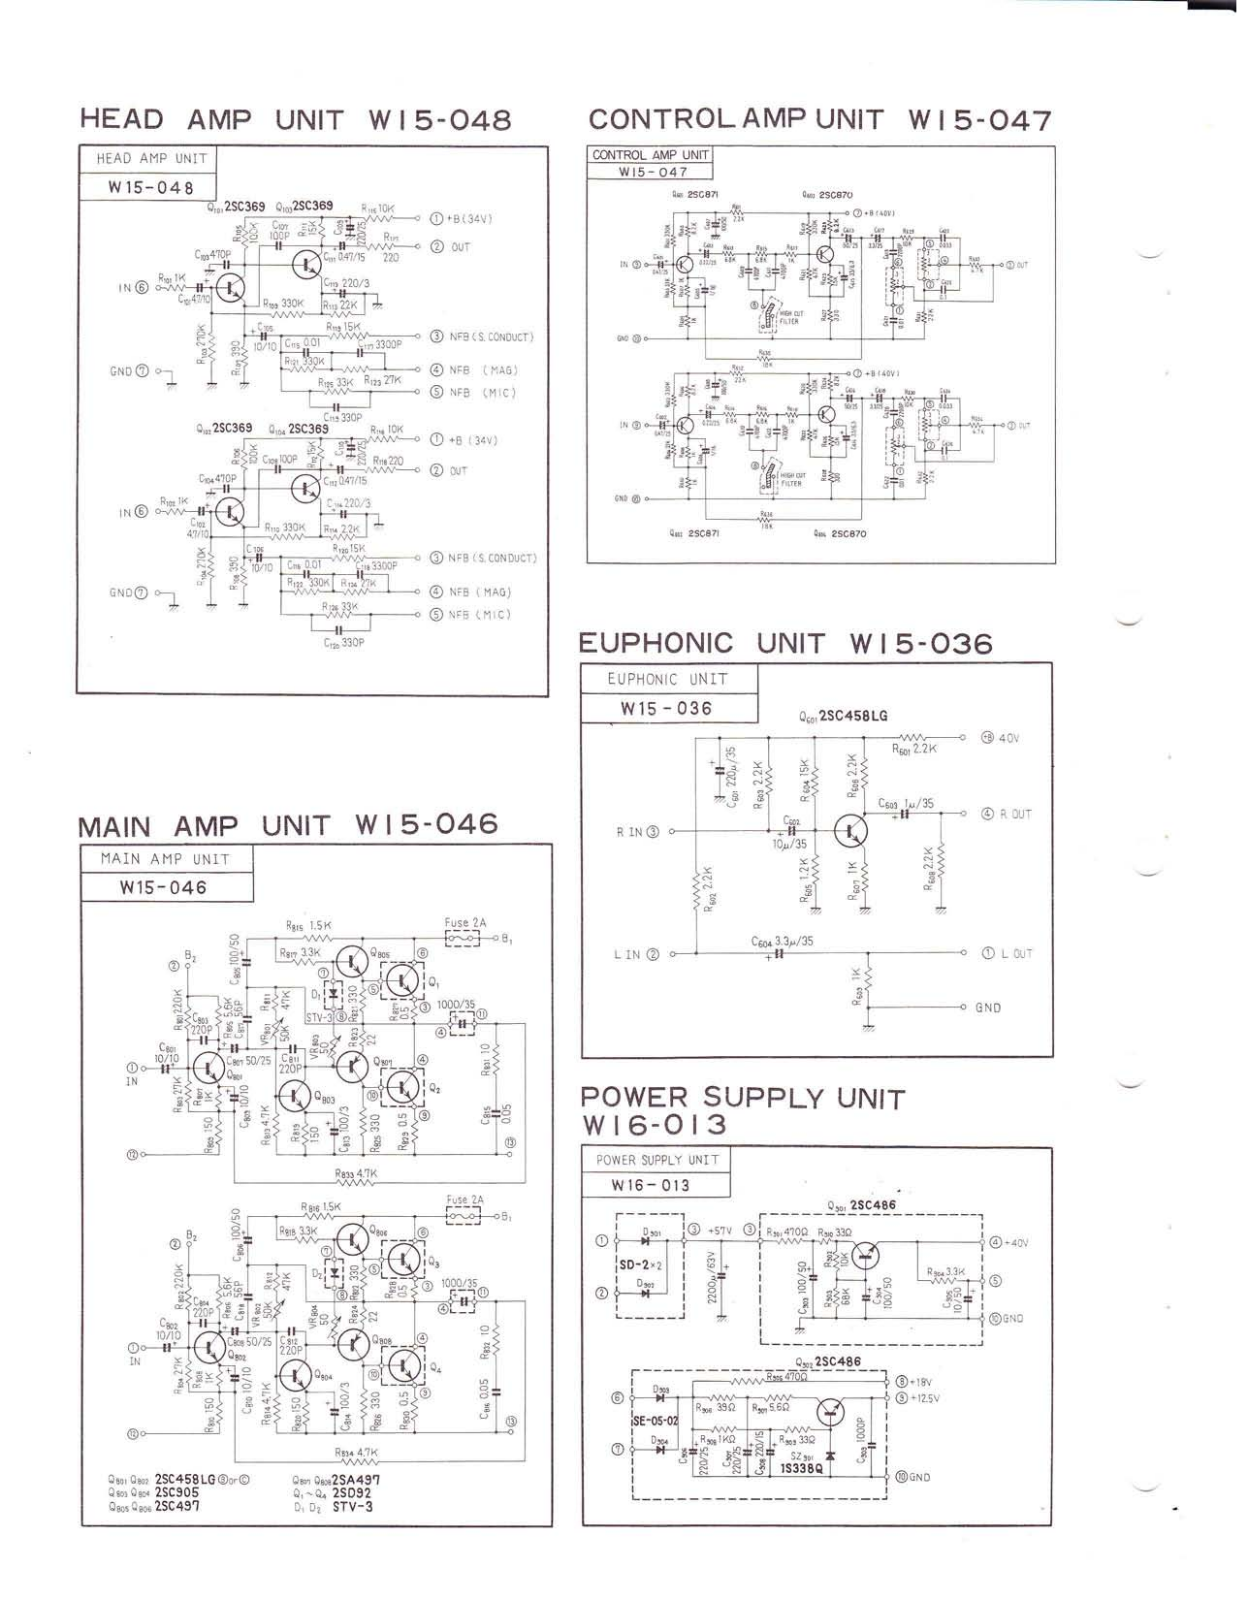 Pioneer W15-048, W15-047, W15-036, W15-046, W16-013 Schematic